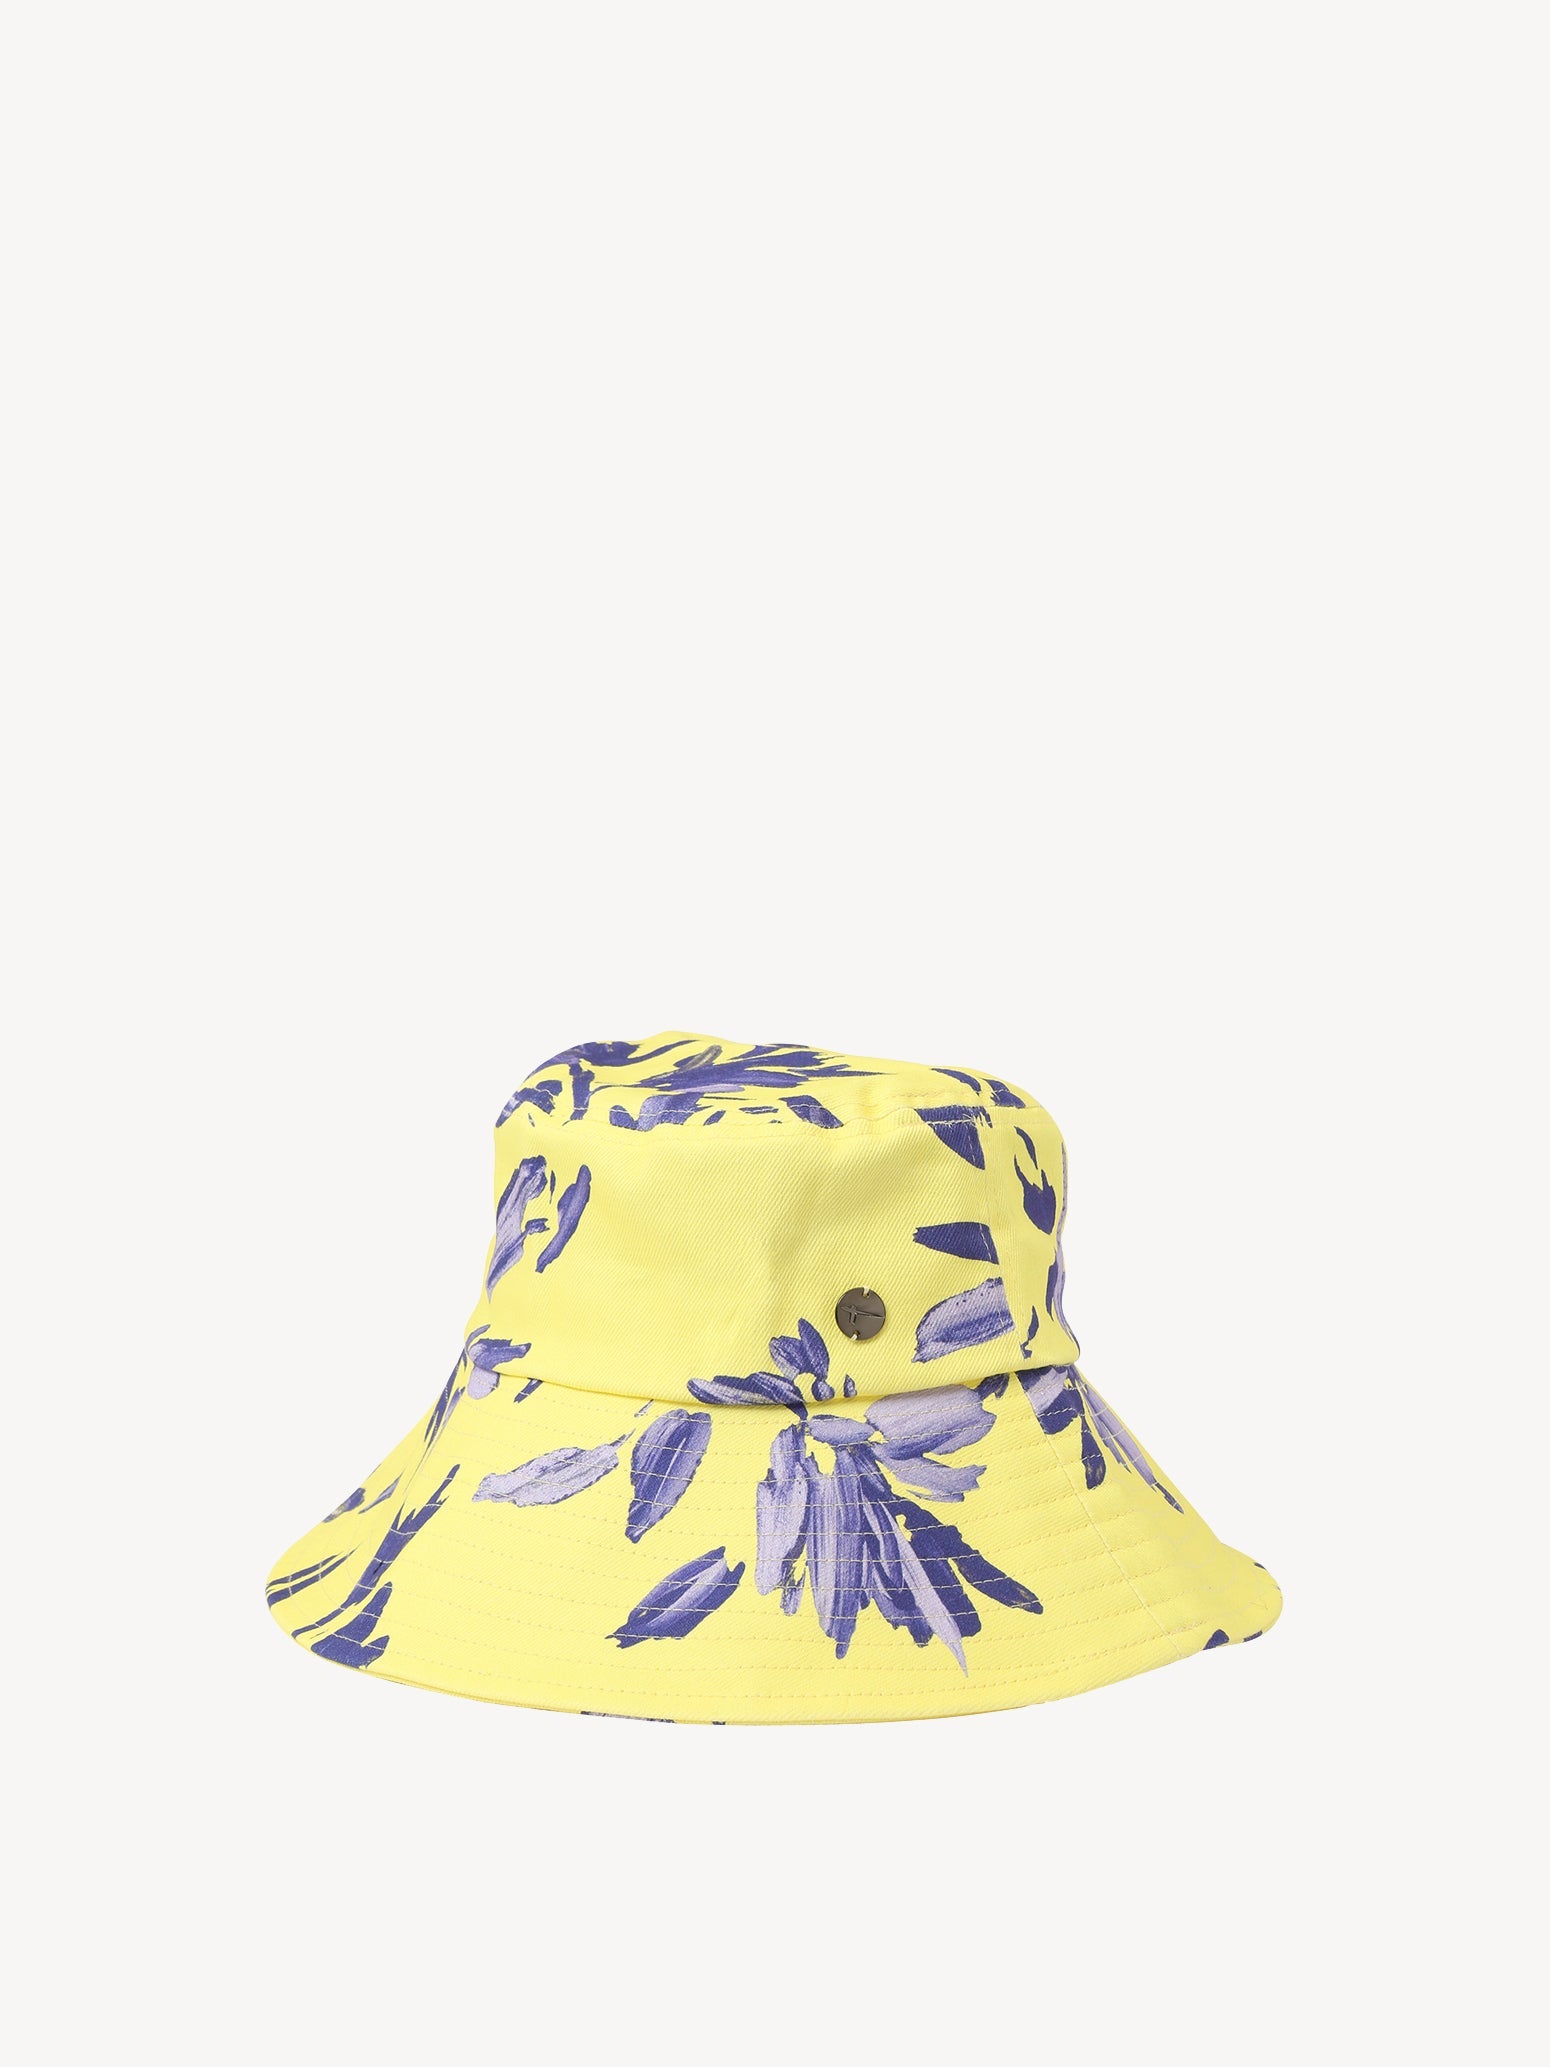 Apolda Aop Bucket Hat in Limelight Flower AOP Hüte Tamaris   